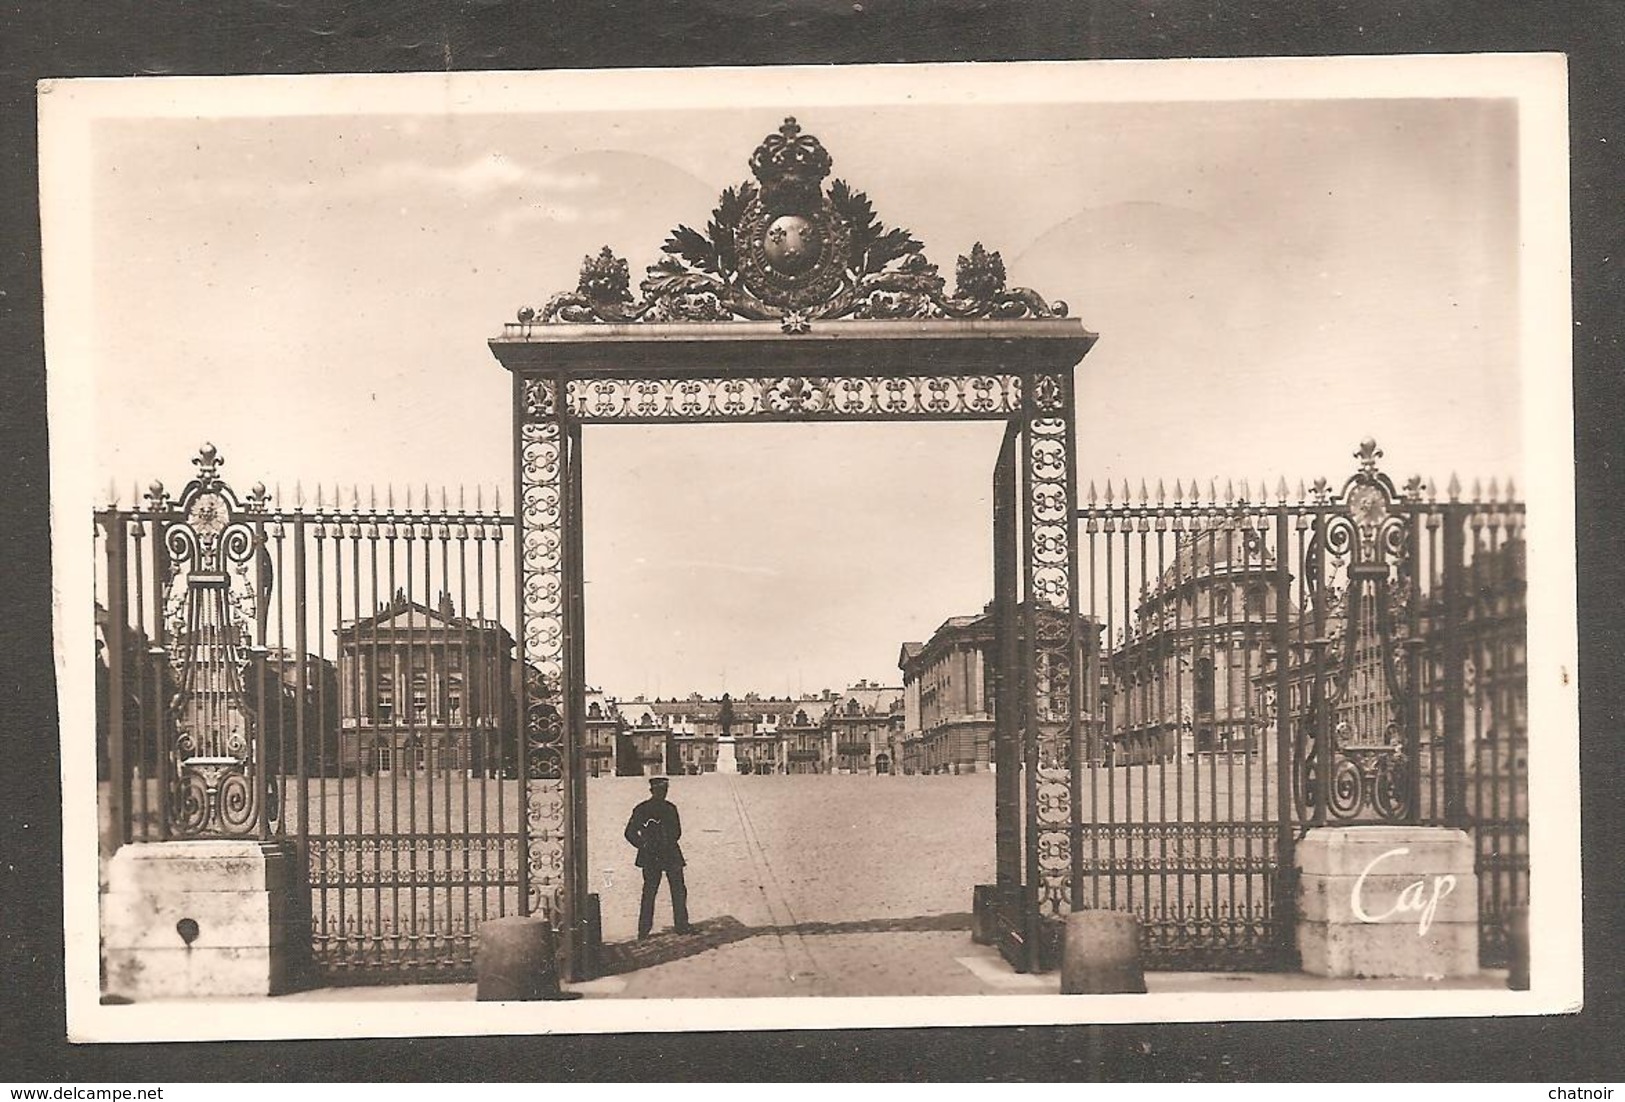 Carte Postale   VERSAILLES + Timbre 18f Versailles  Oblit  Premier Jour  1952 - Covers & Documents